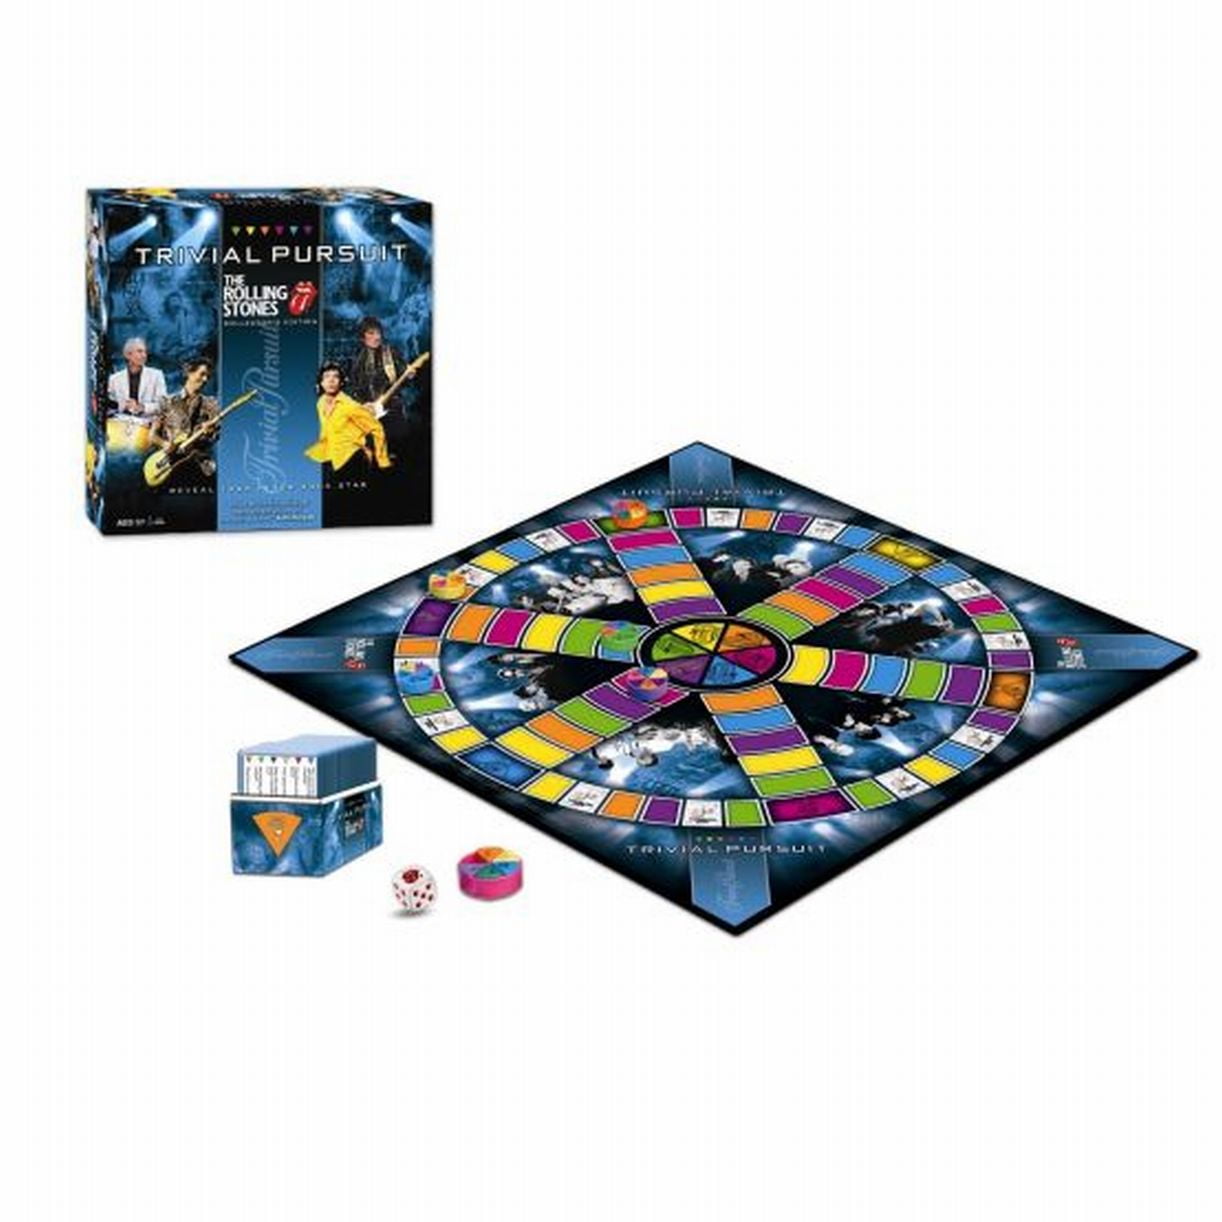 Act1Up dévoile une table tactile renfermant des dizaines de jeux Hasbro  (Monopoly, Scrabble, Trivial Pursuit) - NeozOne